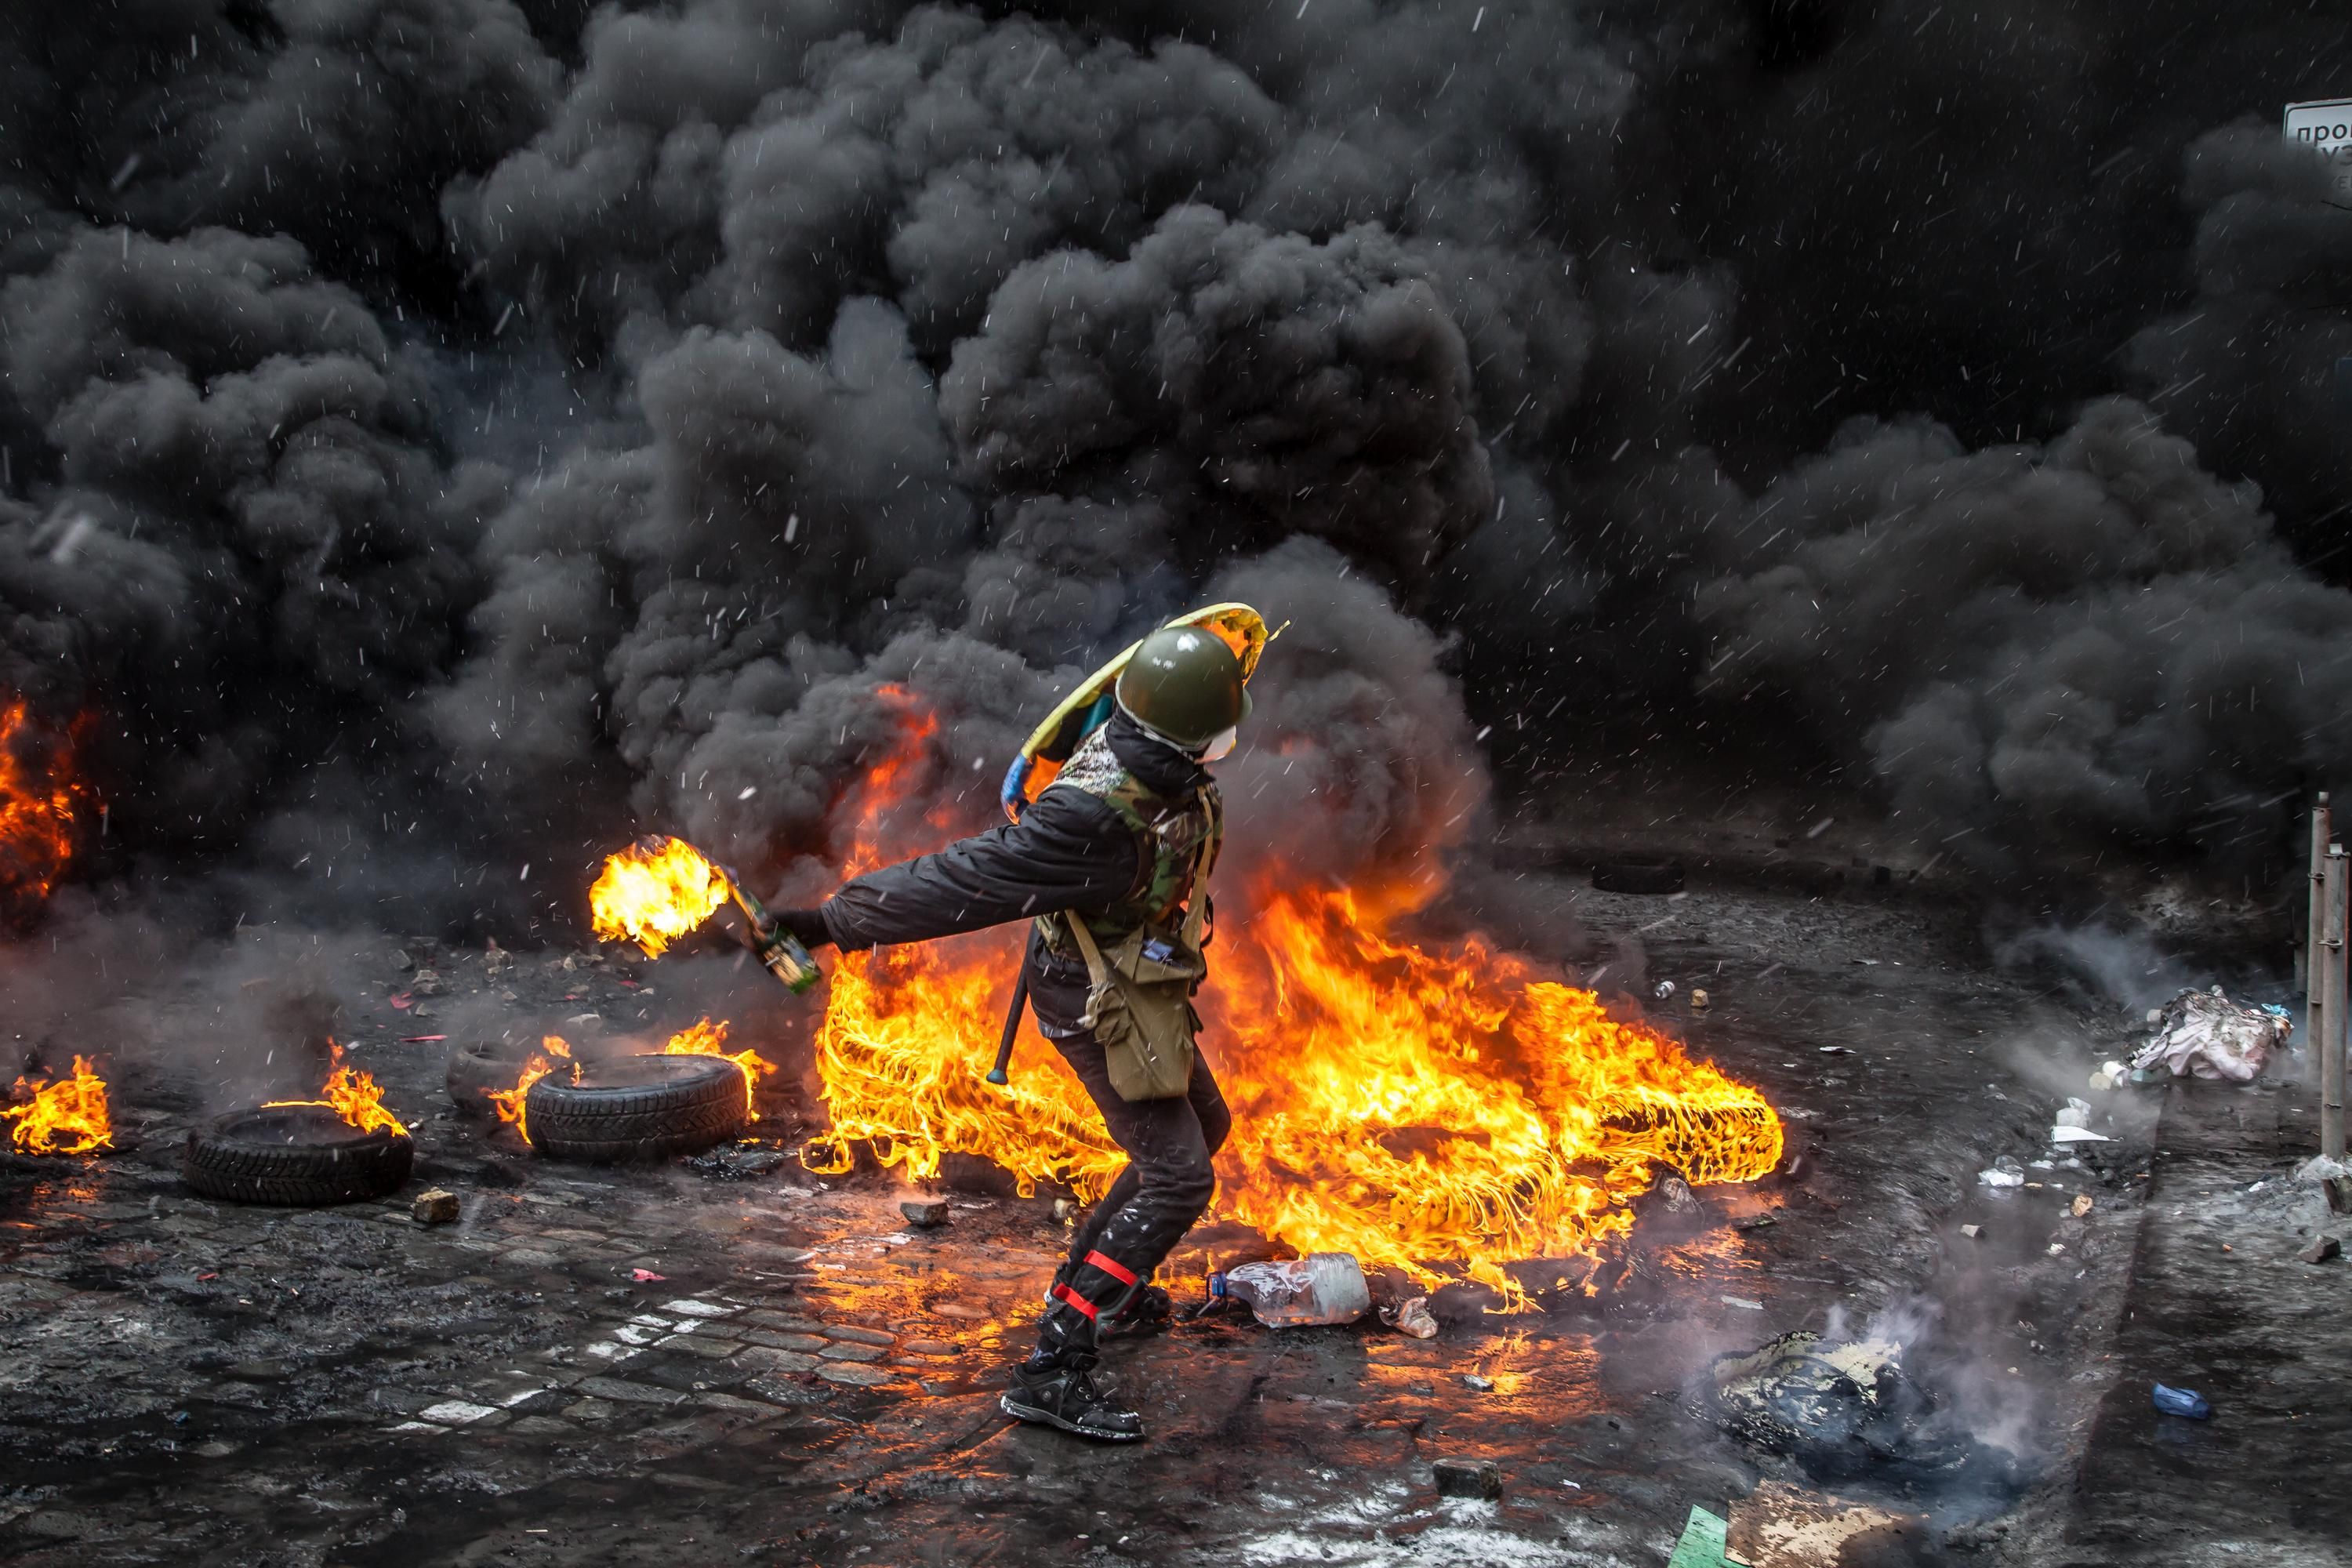 Українцям потрібно представити офіційну картину того, що відбулося, – Бутусов про події Майдану